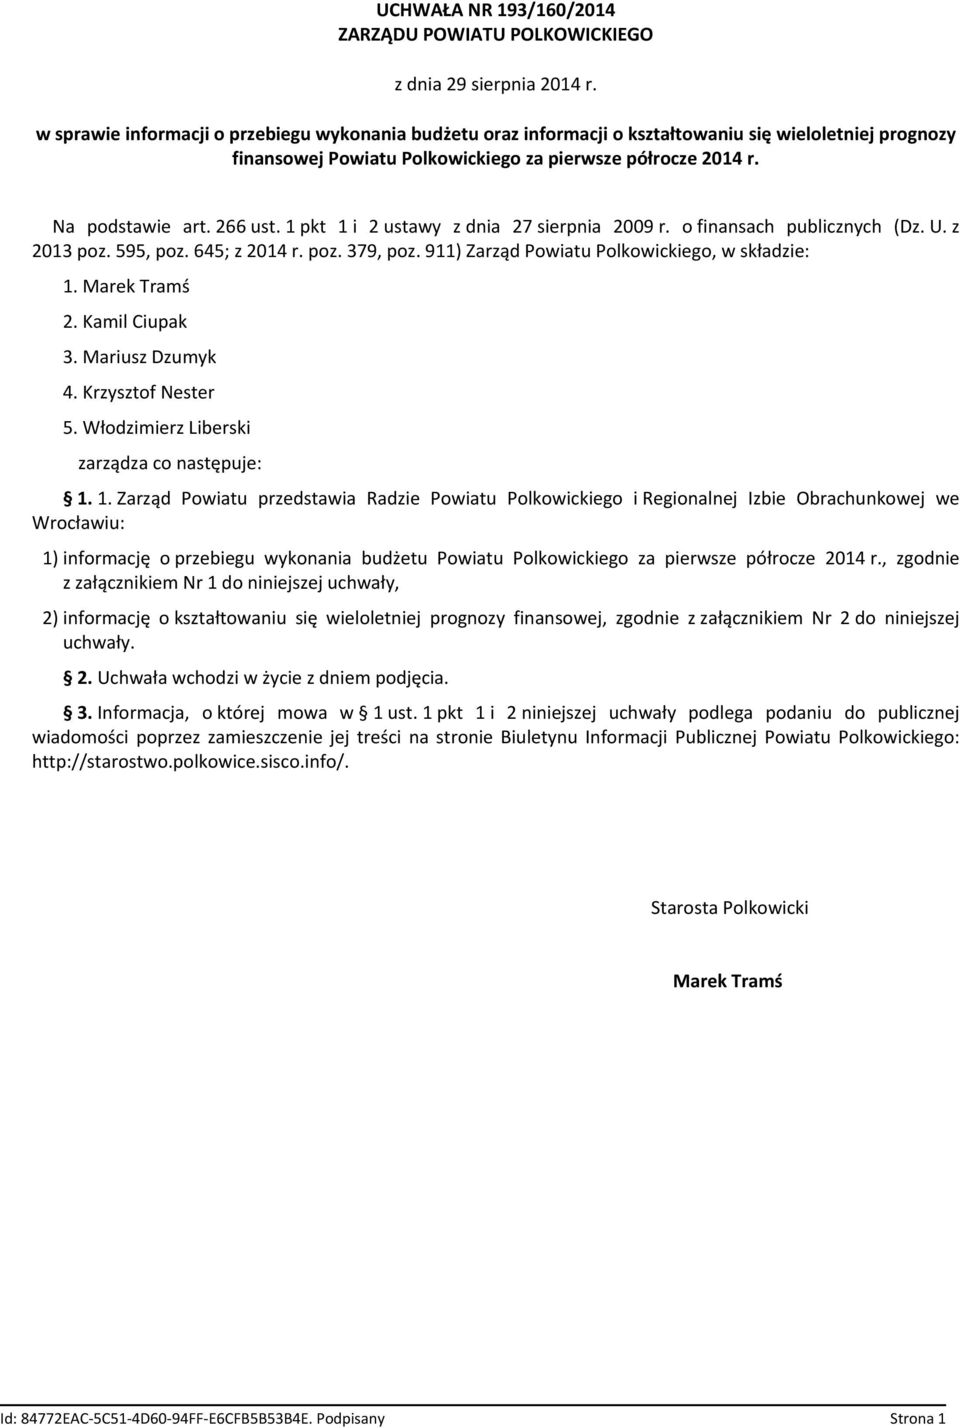 1 pkt 1 i 2 ustawy z dnia 27 sierpnia 2009 r. o finansach publicznych (Dz. U. z 2013 poz. 595, poz. 645; z 2014 r. poz. 379, poz. 911) Zarząd Powiatu Polkowickiego, w składzie: 1. Marek Tramś 2.